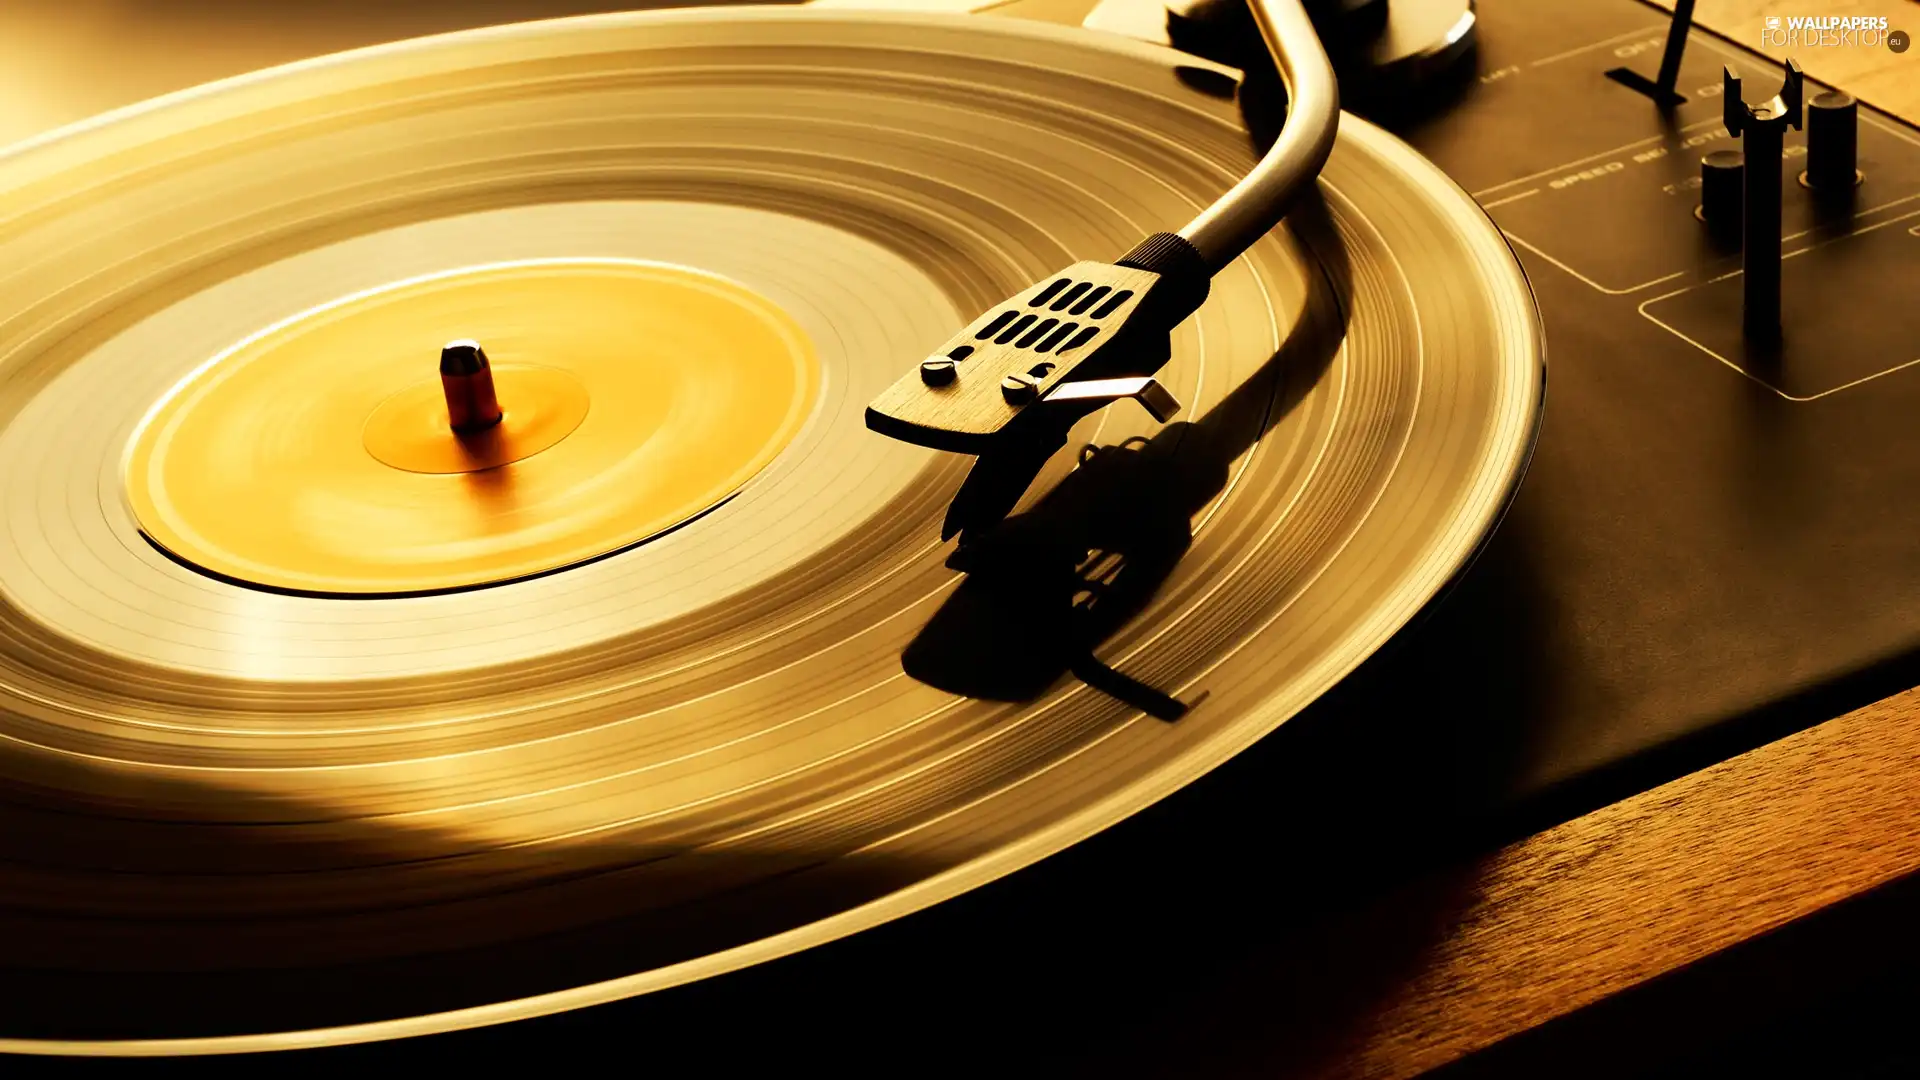 Vinyl, music, gramophone